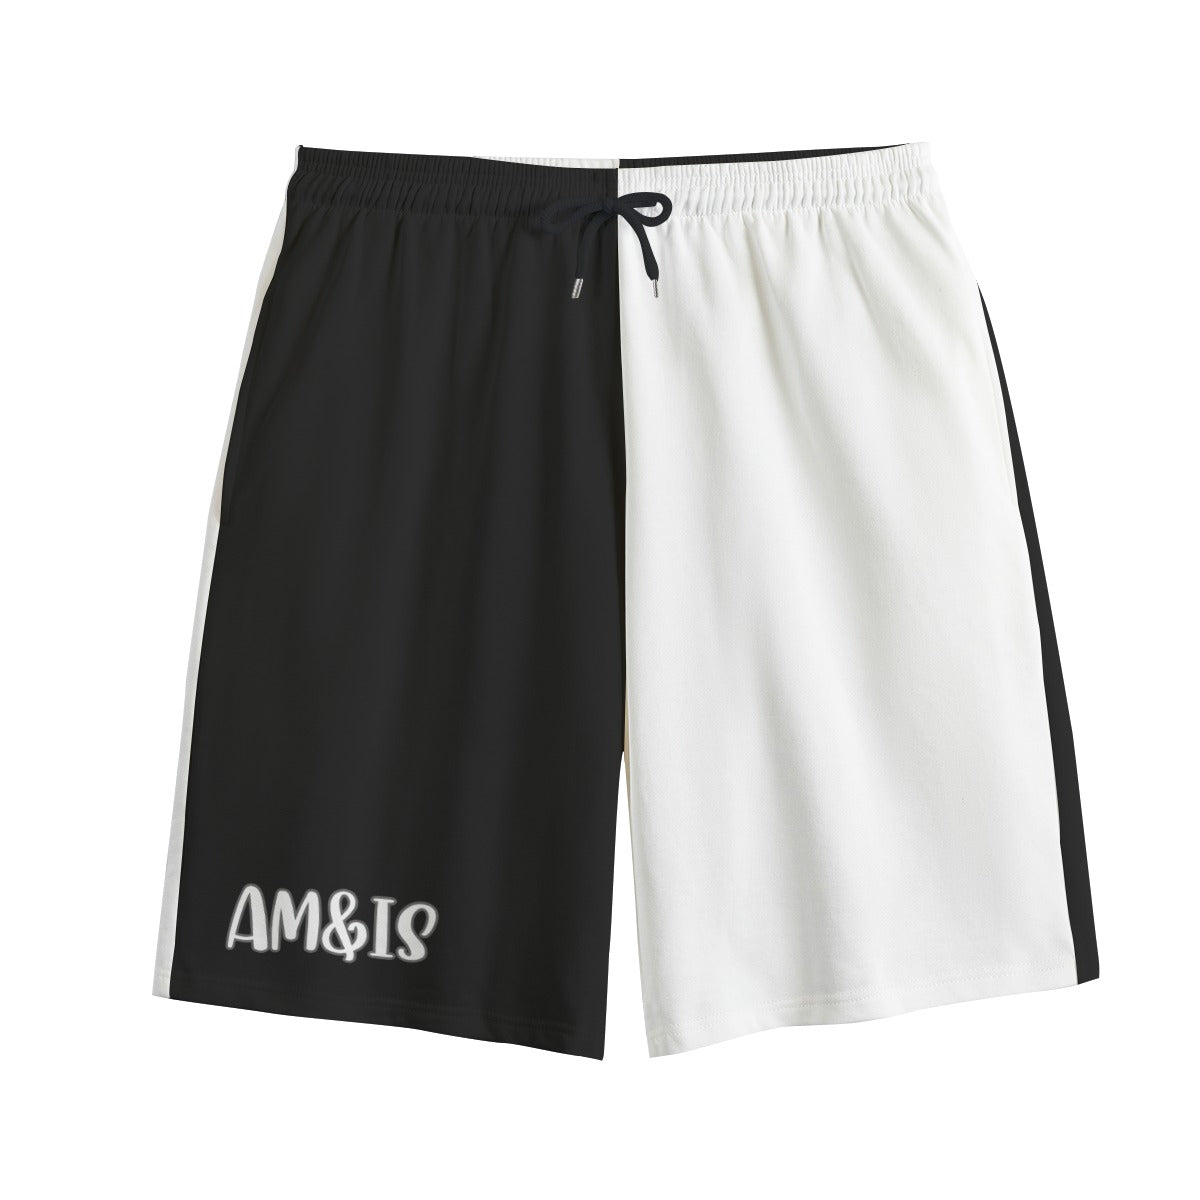 Black White - AM&IS Black Color Block Men's Shorts | 100% Cotton - mens shorts at TFC&H Co.